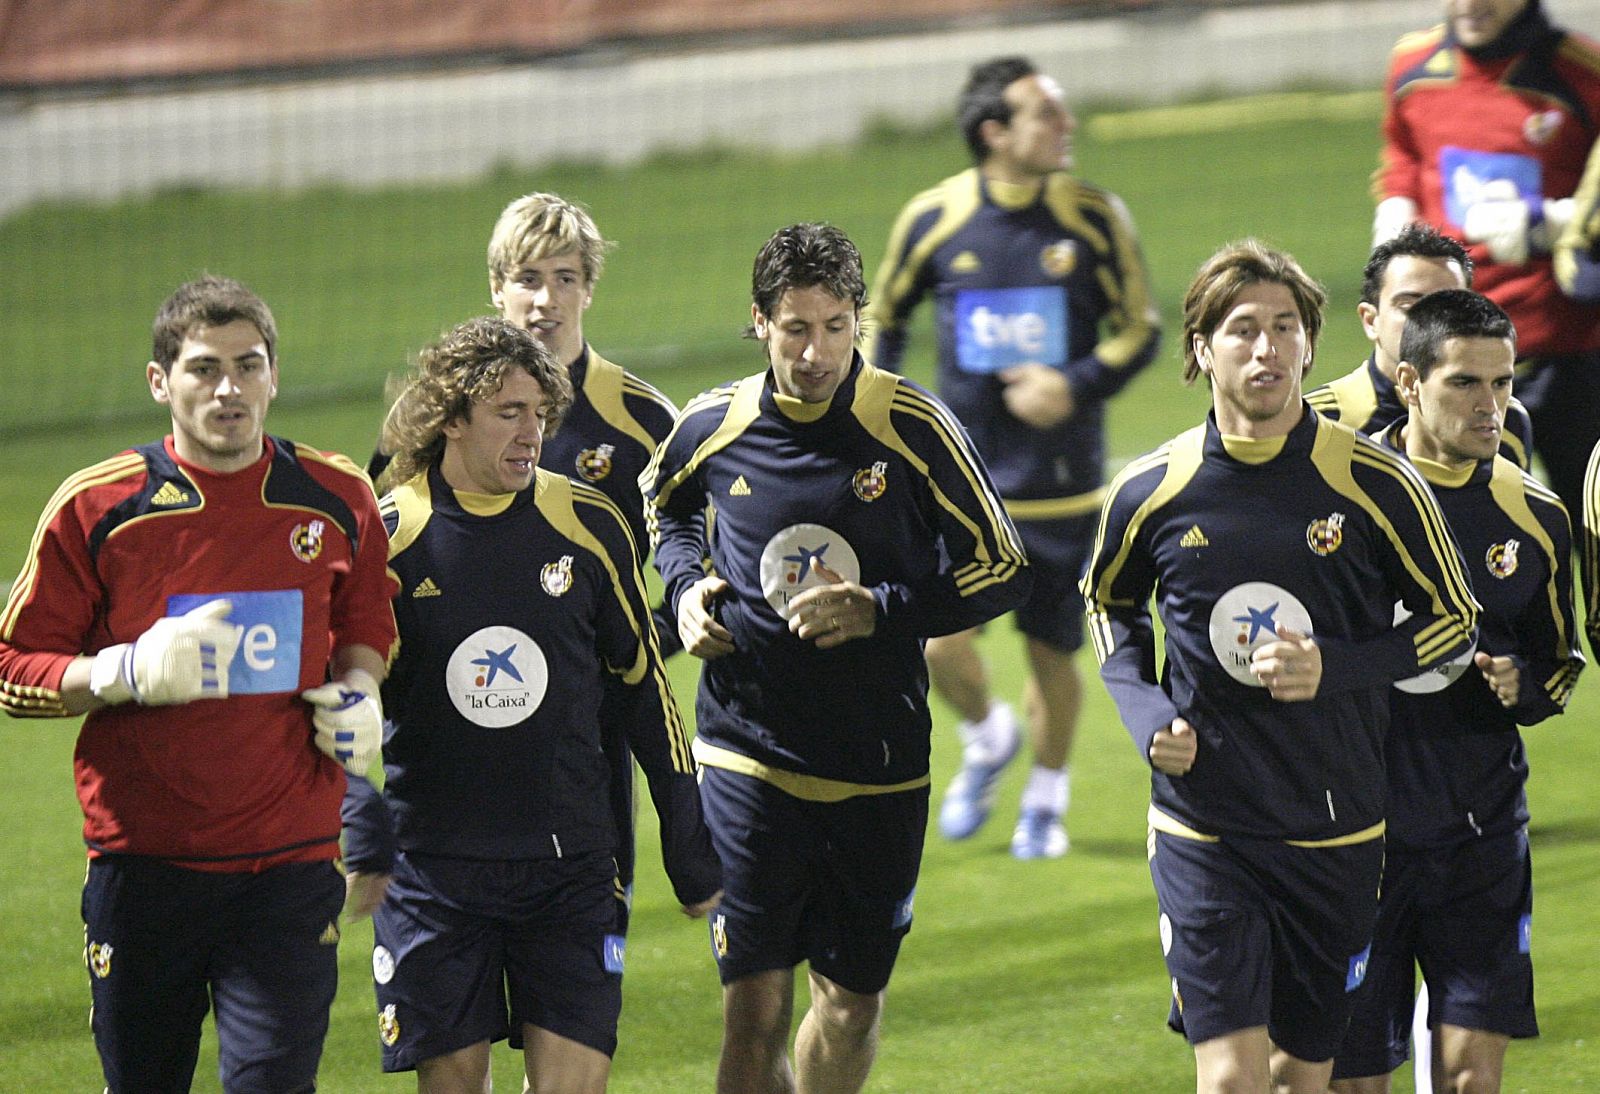 Los jugadores de la selección, Casillas, Puyol, Torres, Capdevila, Ramos y  "Juanito", durante el entrenamiento del lunes en Villarreal para preparar el amistoso contra Chile.